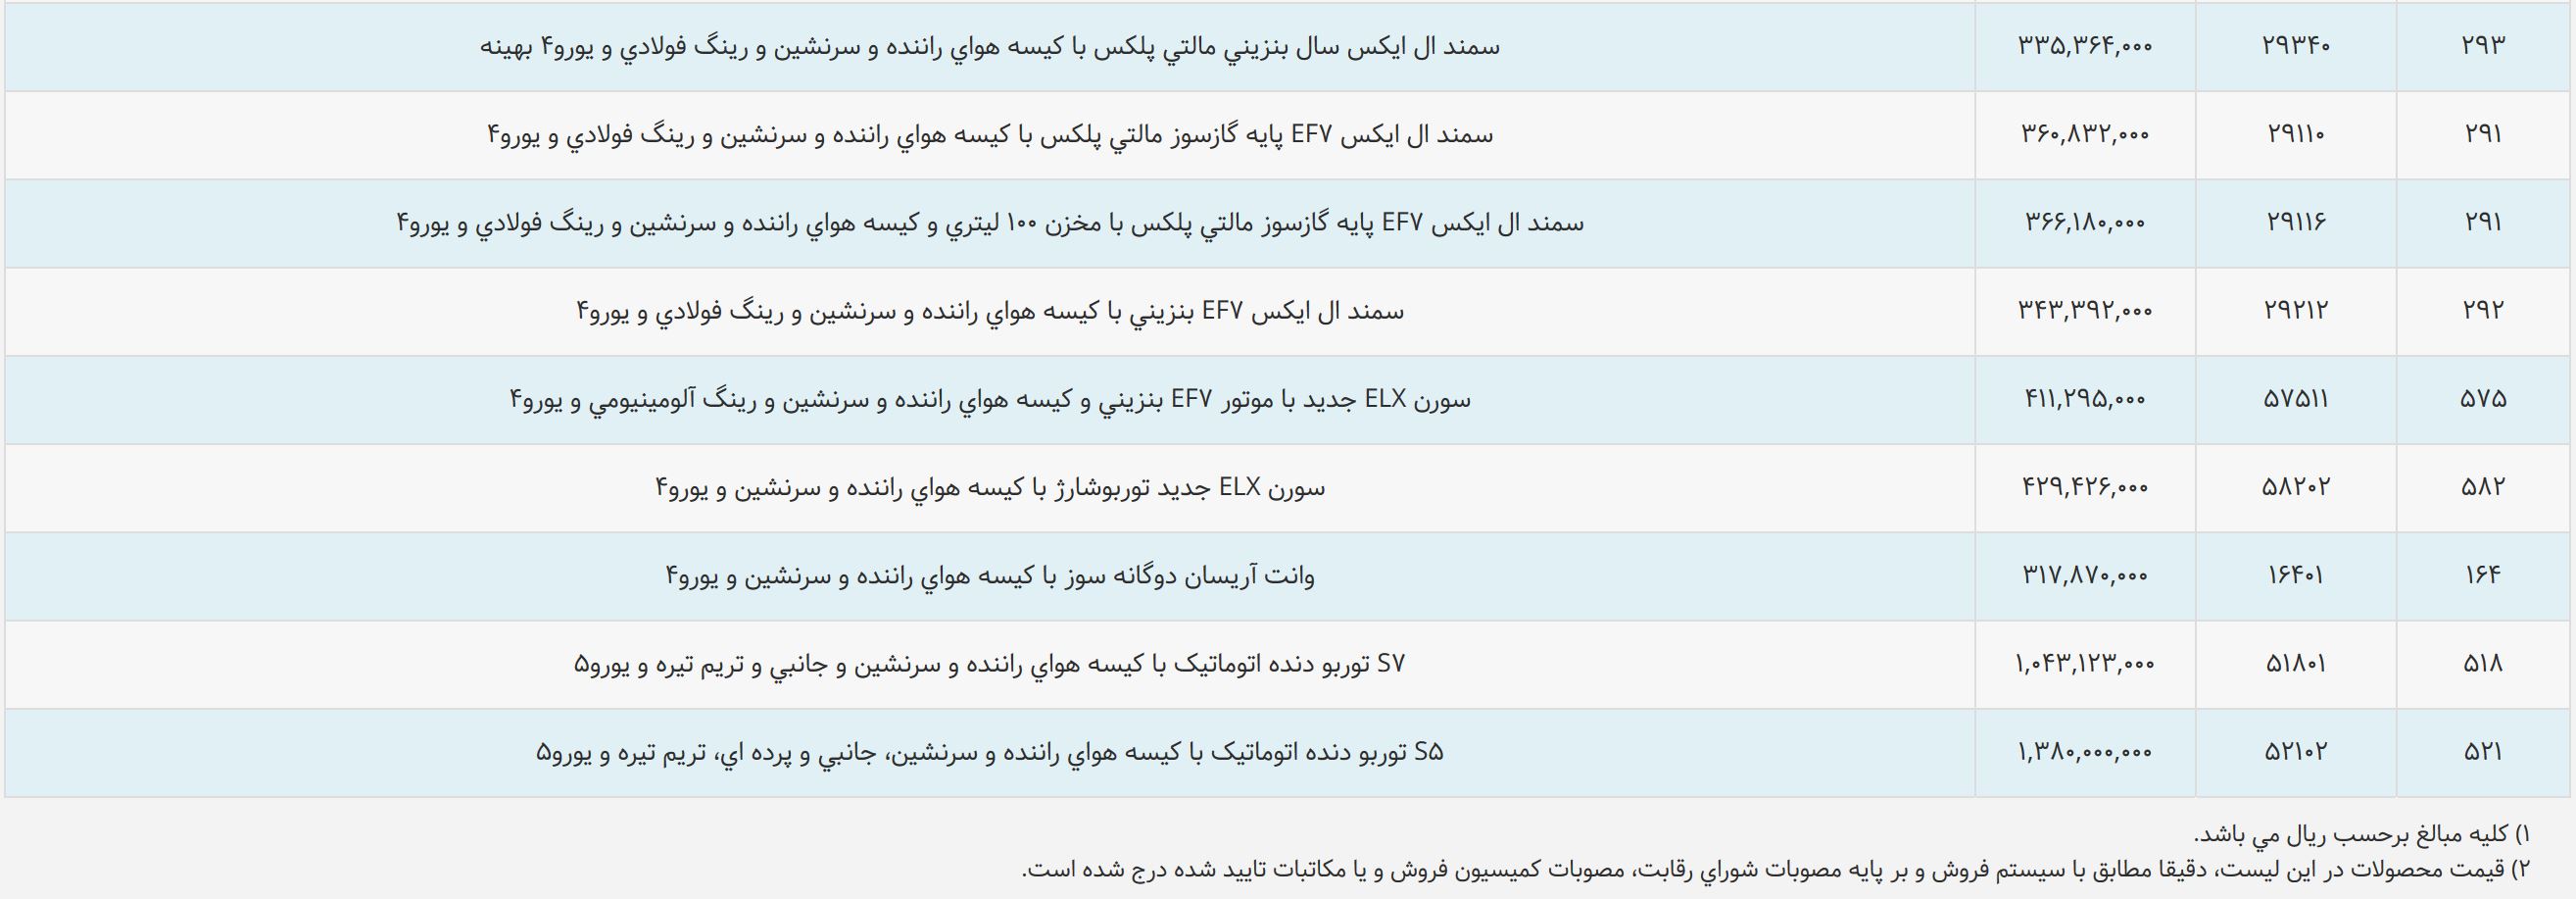 فهرست قیمت ایران خودرو در دی ماه 97